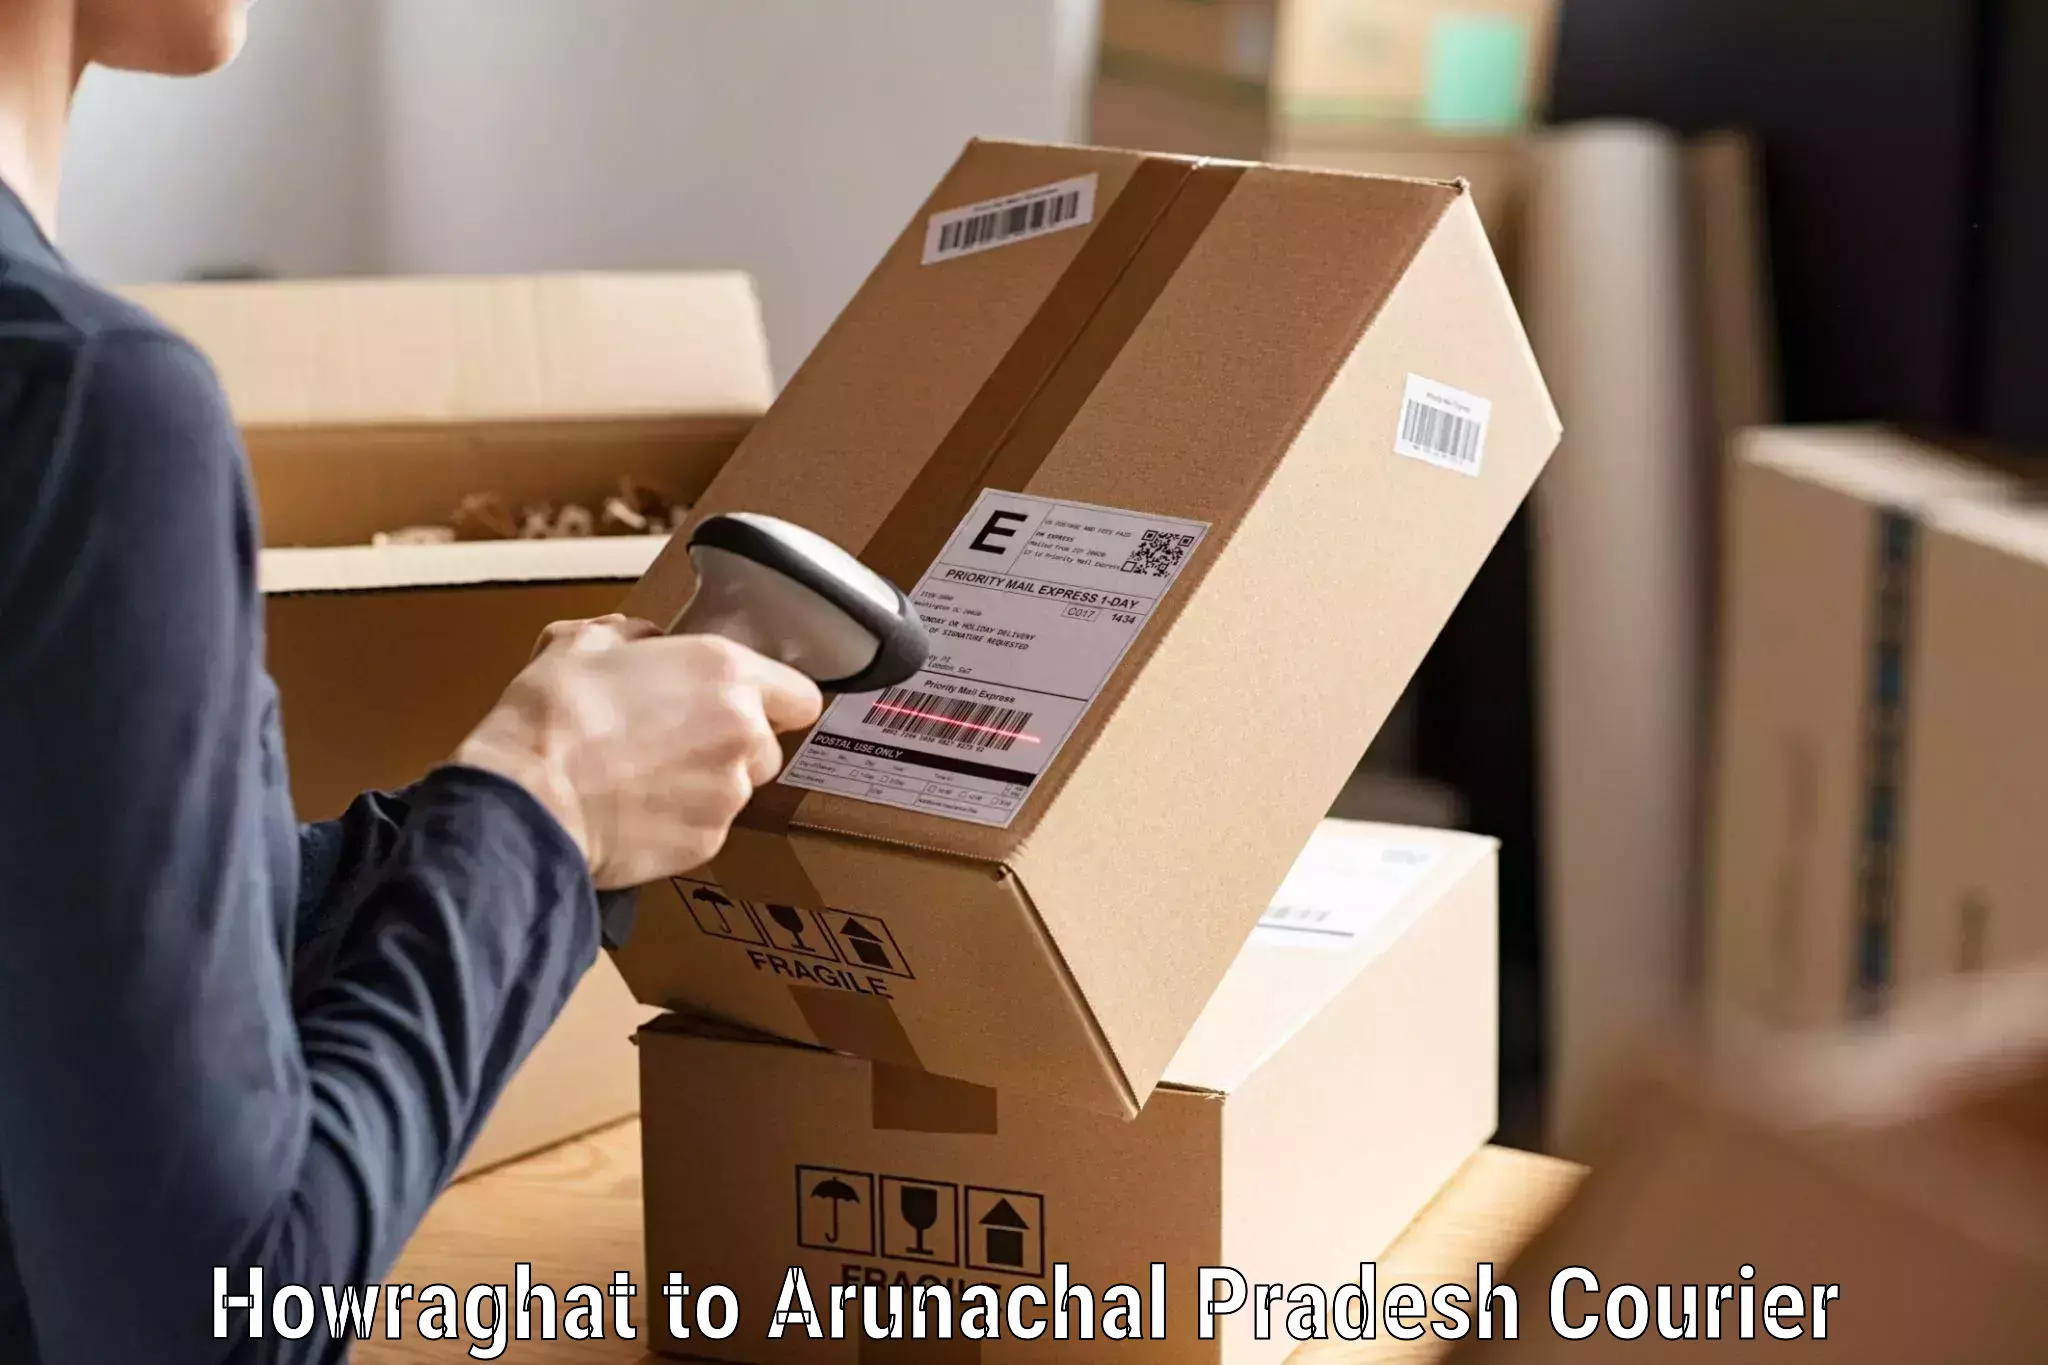 Bulk shipment Howraghat to Arunachal Pradesh